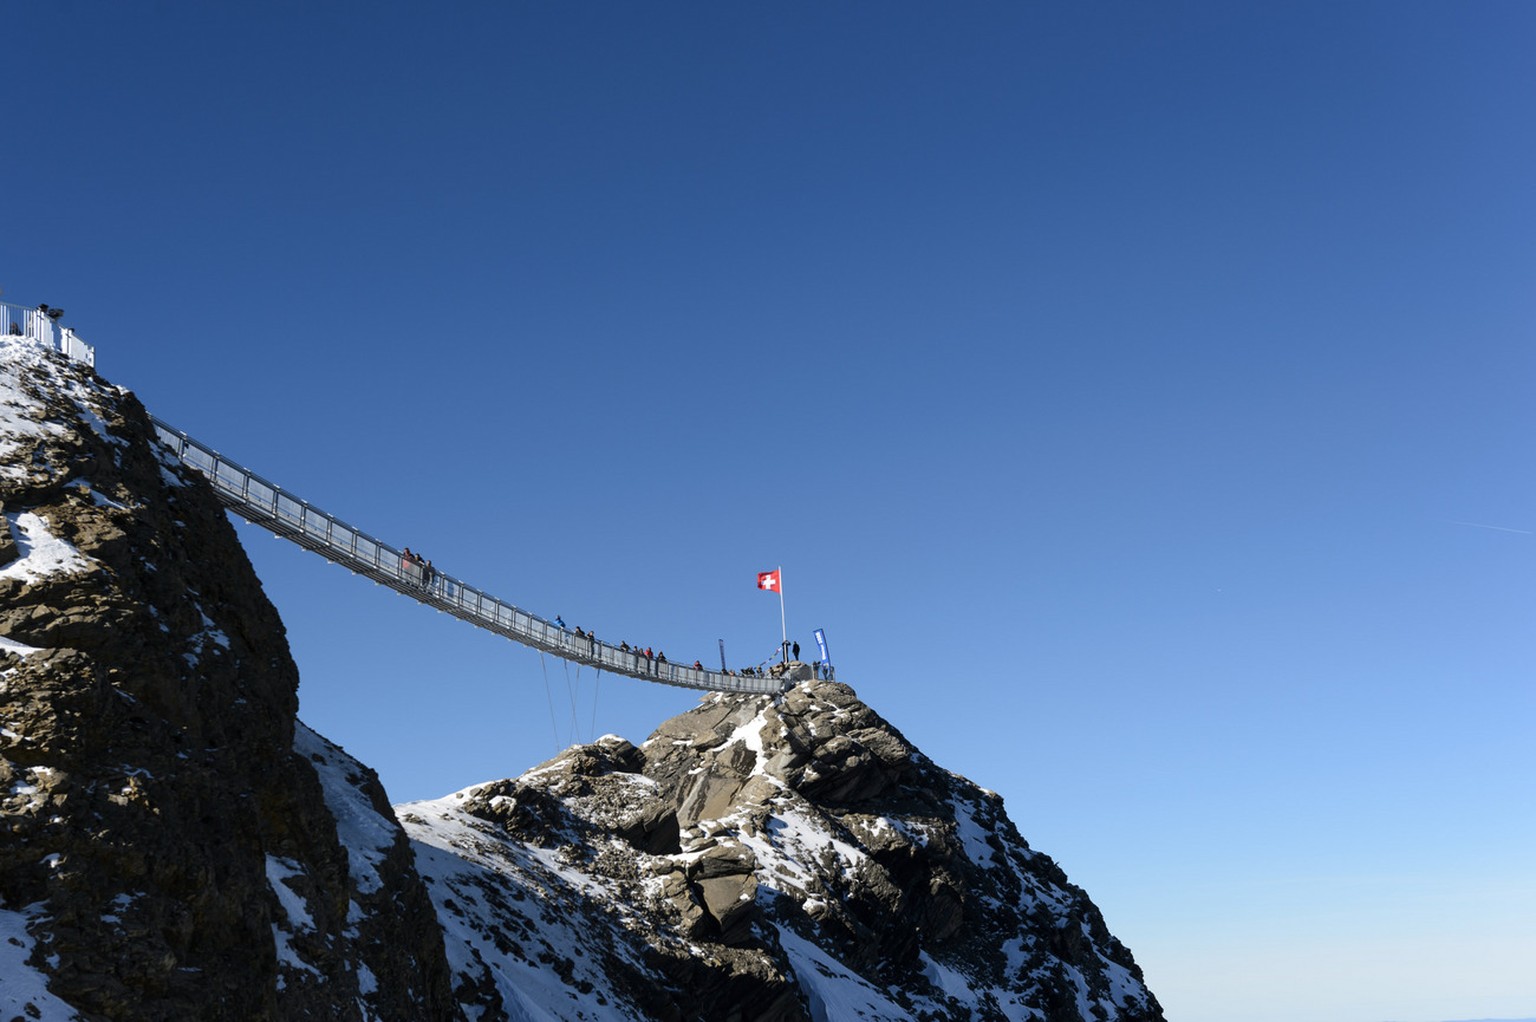 Der Peak Walk auf dem Glacier 3000 ist die einzige Hängebrücke auf der ganzen Welt, die zwei Berggipfel miteinander verbindet.